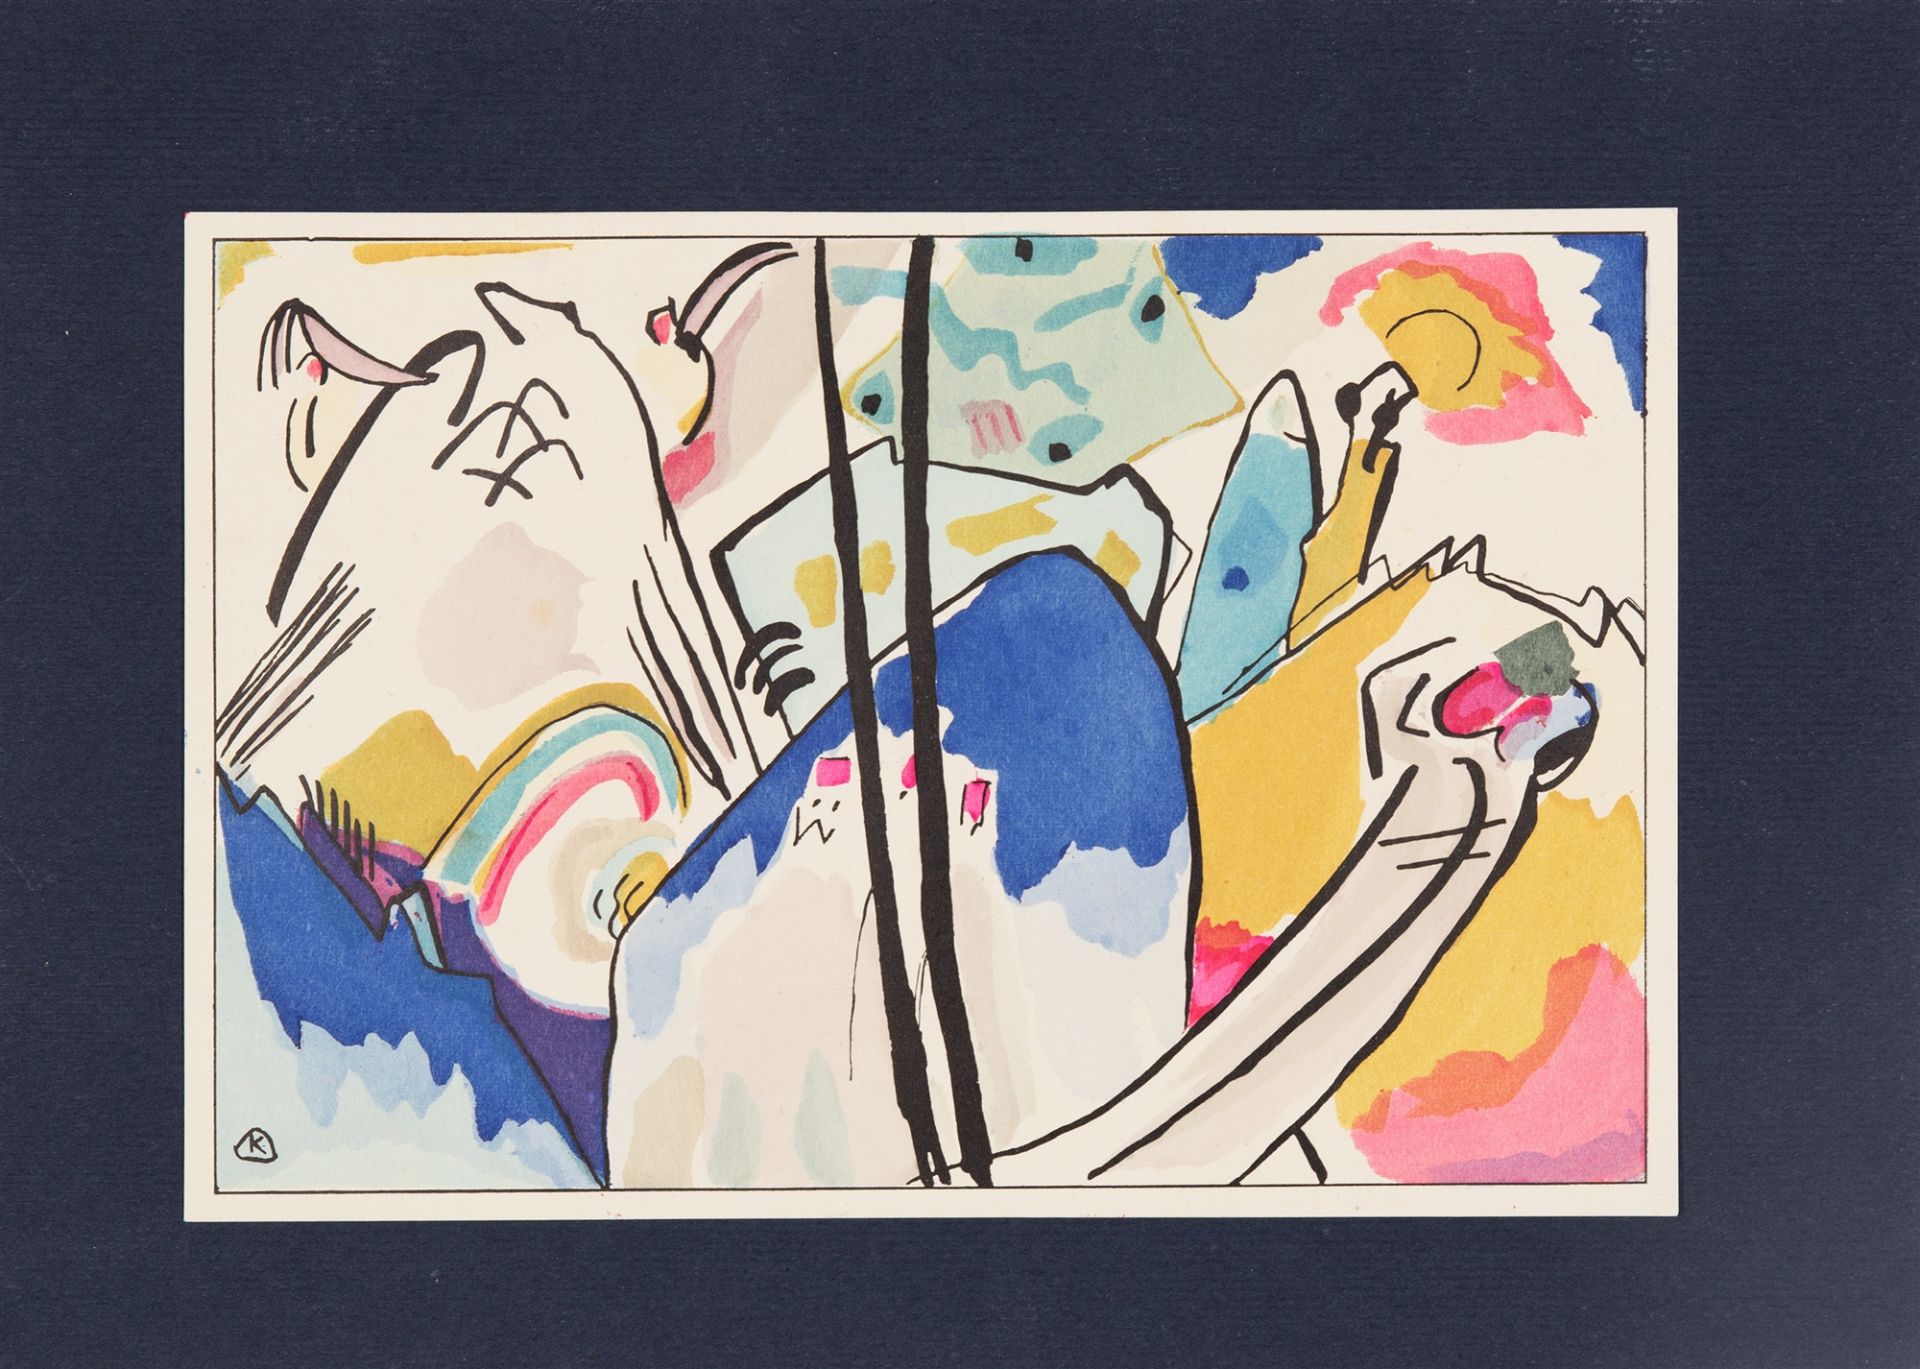 W. Kandinsky / F. Marc, Der blaue Reiter. München 1912. - Image 3 of 3